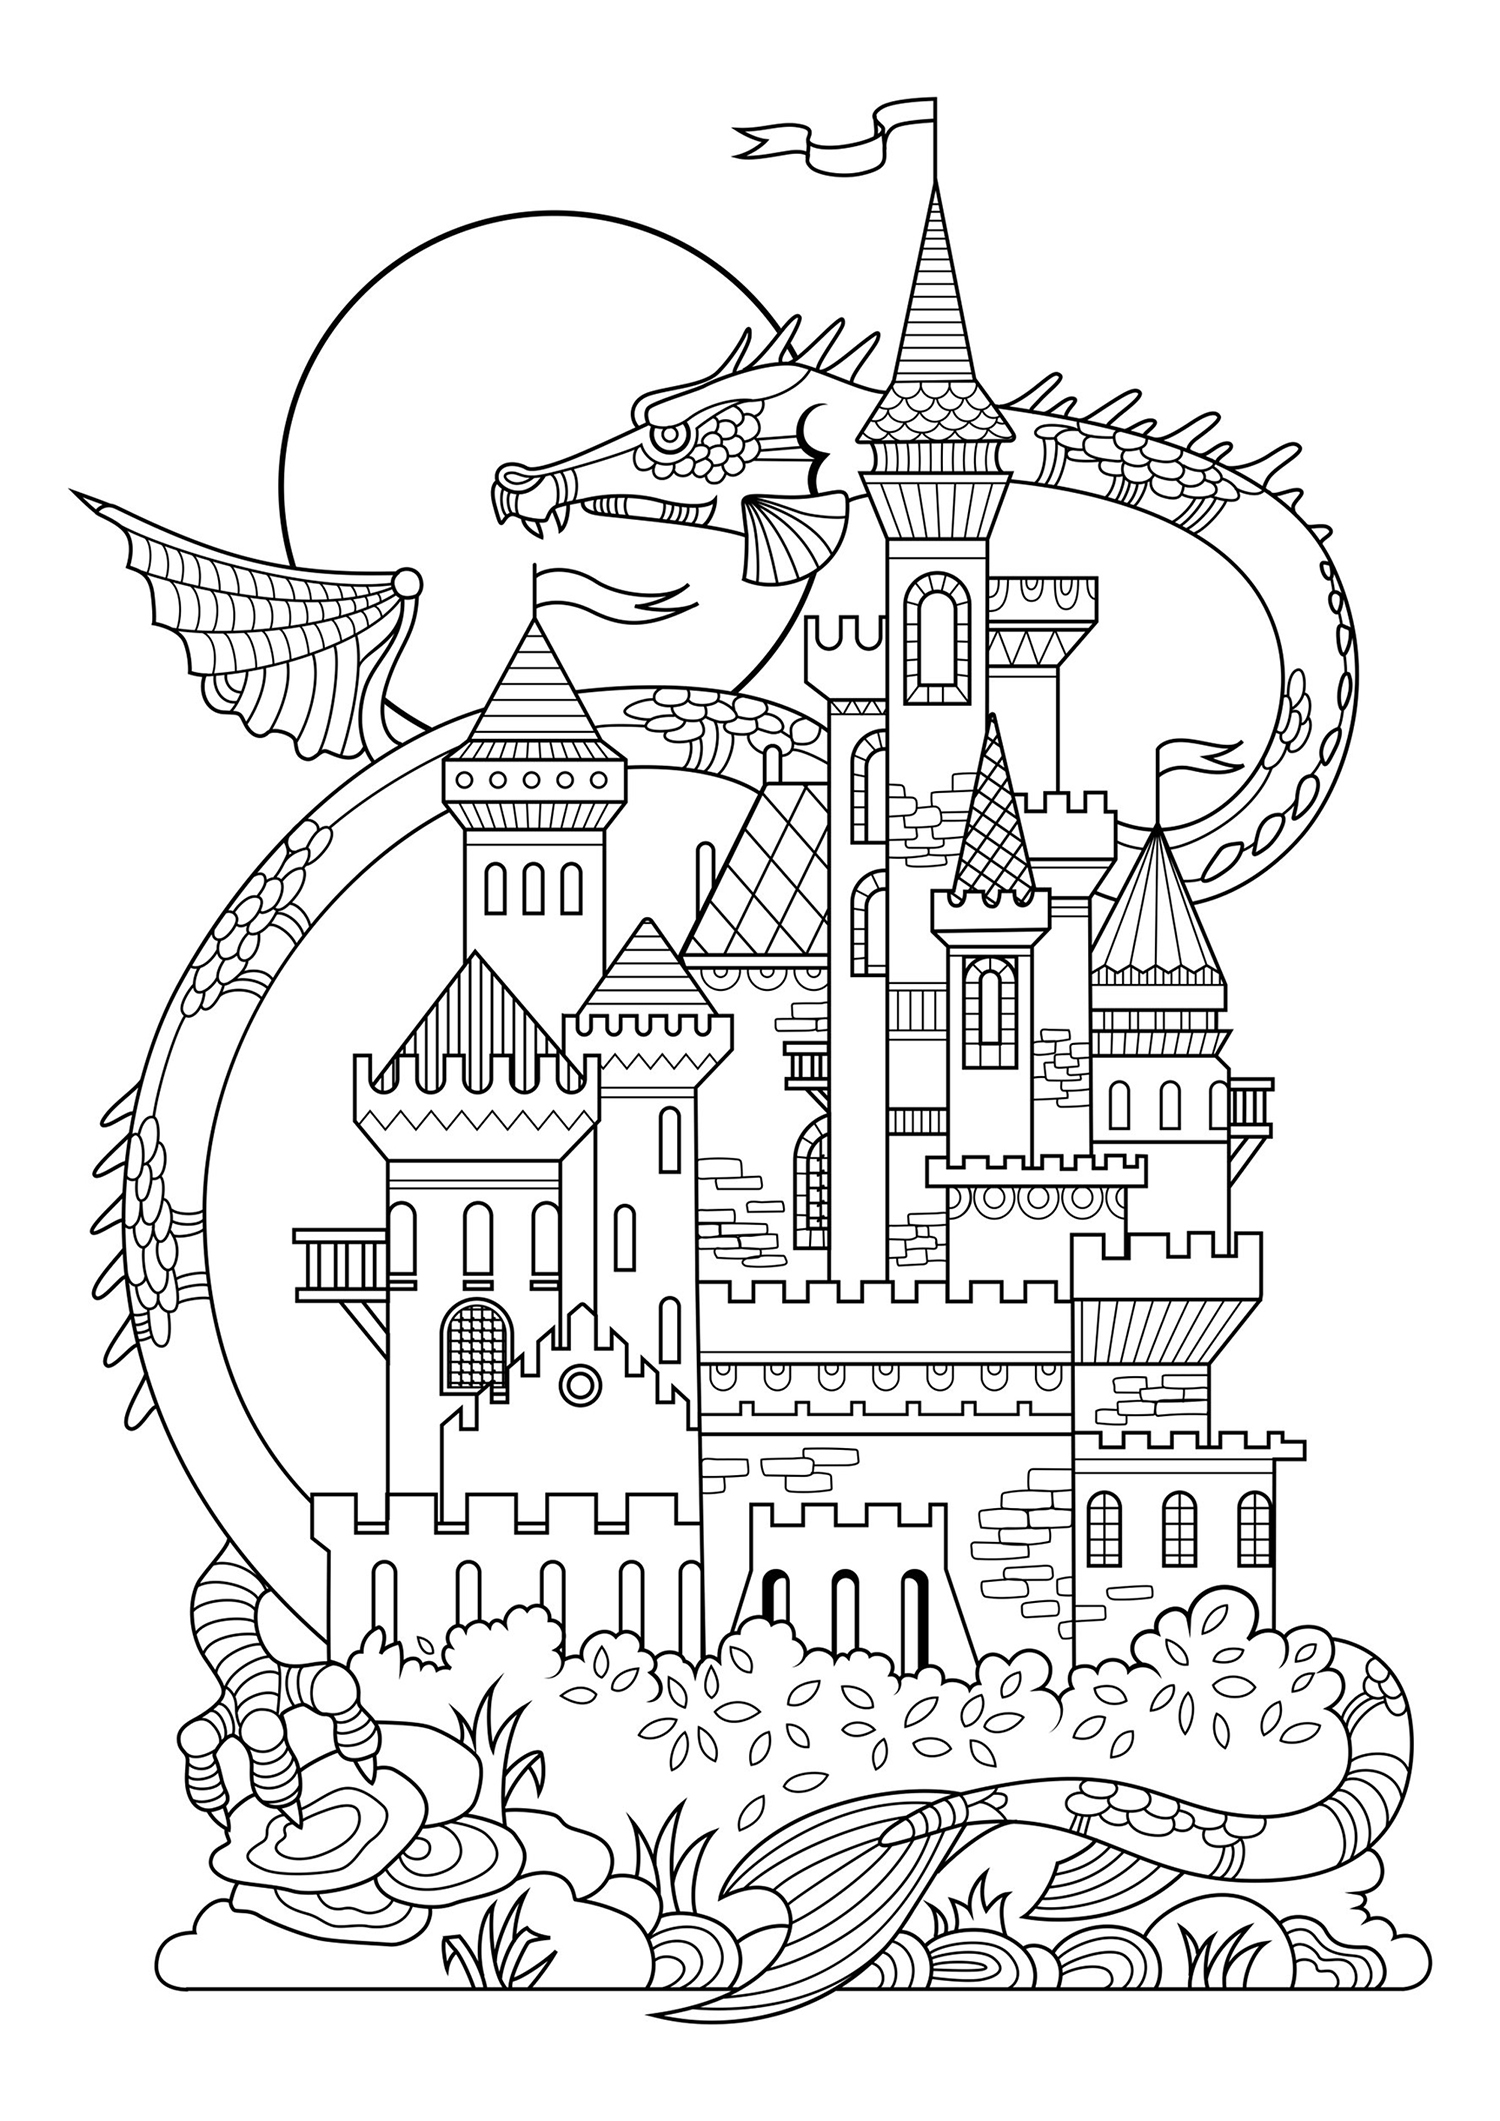 Bonito castillo de cuento de hadas, ¡con un dragón gigante al fondo!, Origen : 123rf   Artista : Alexpokusay